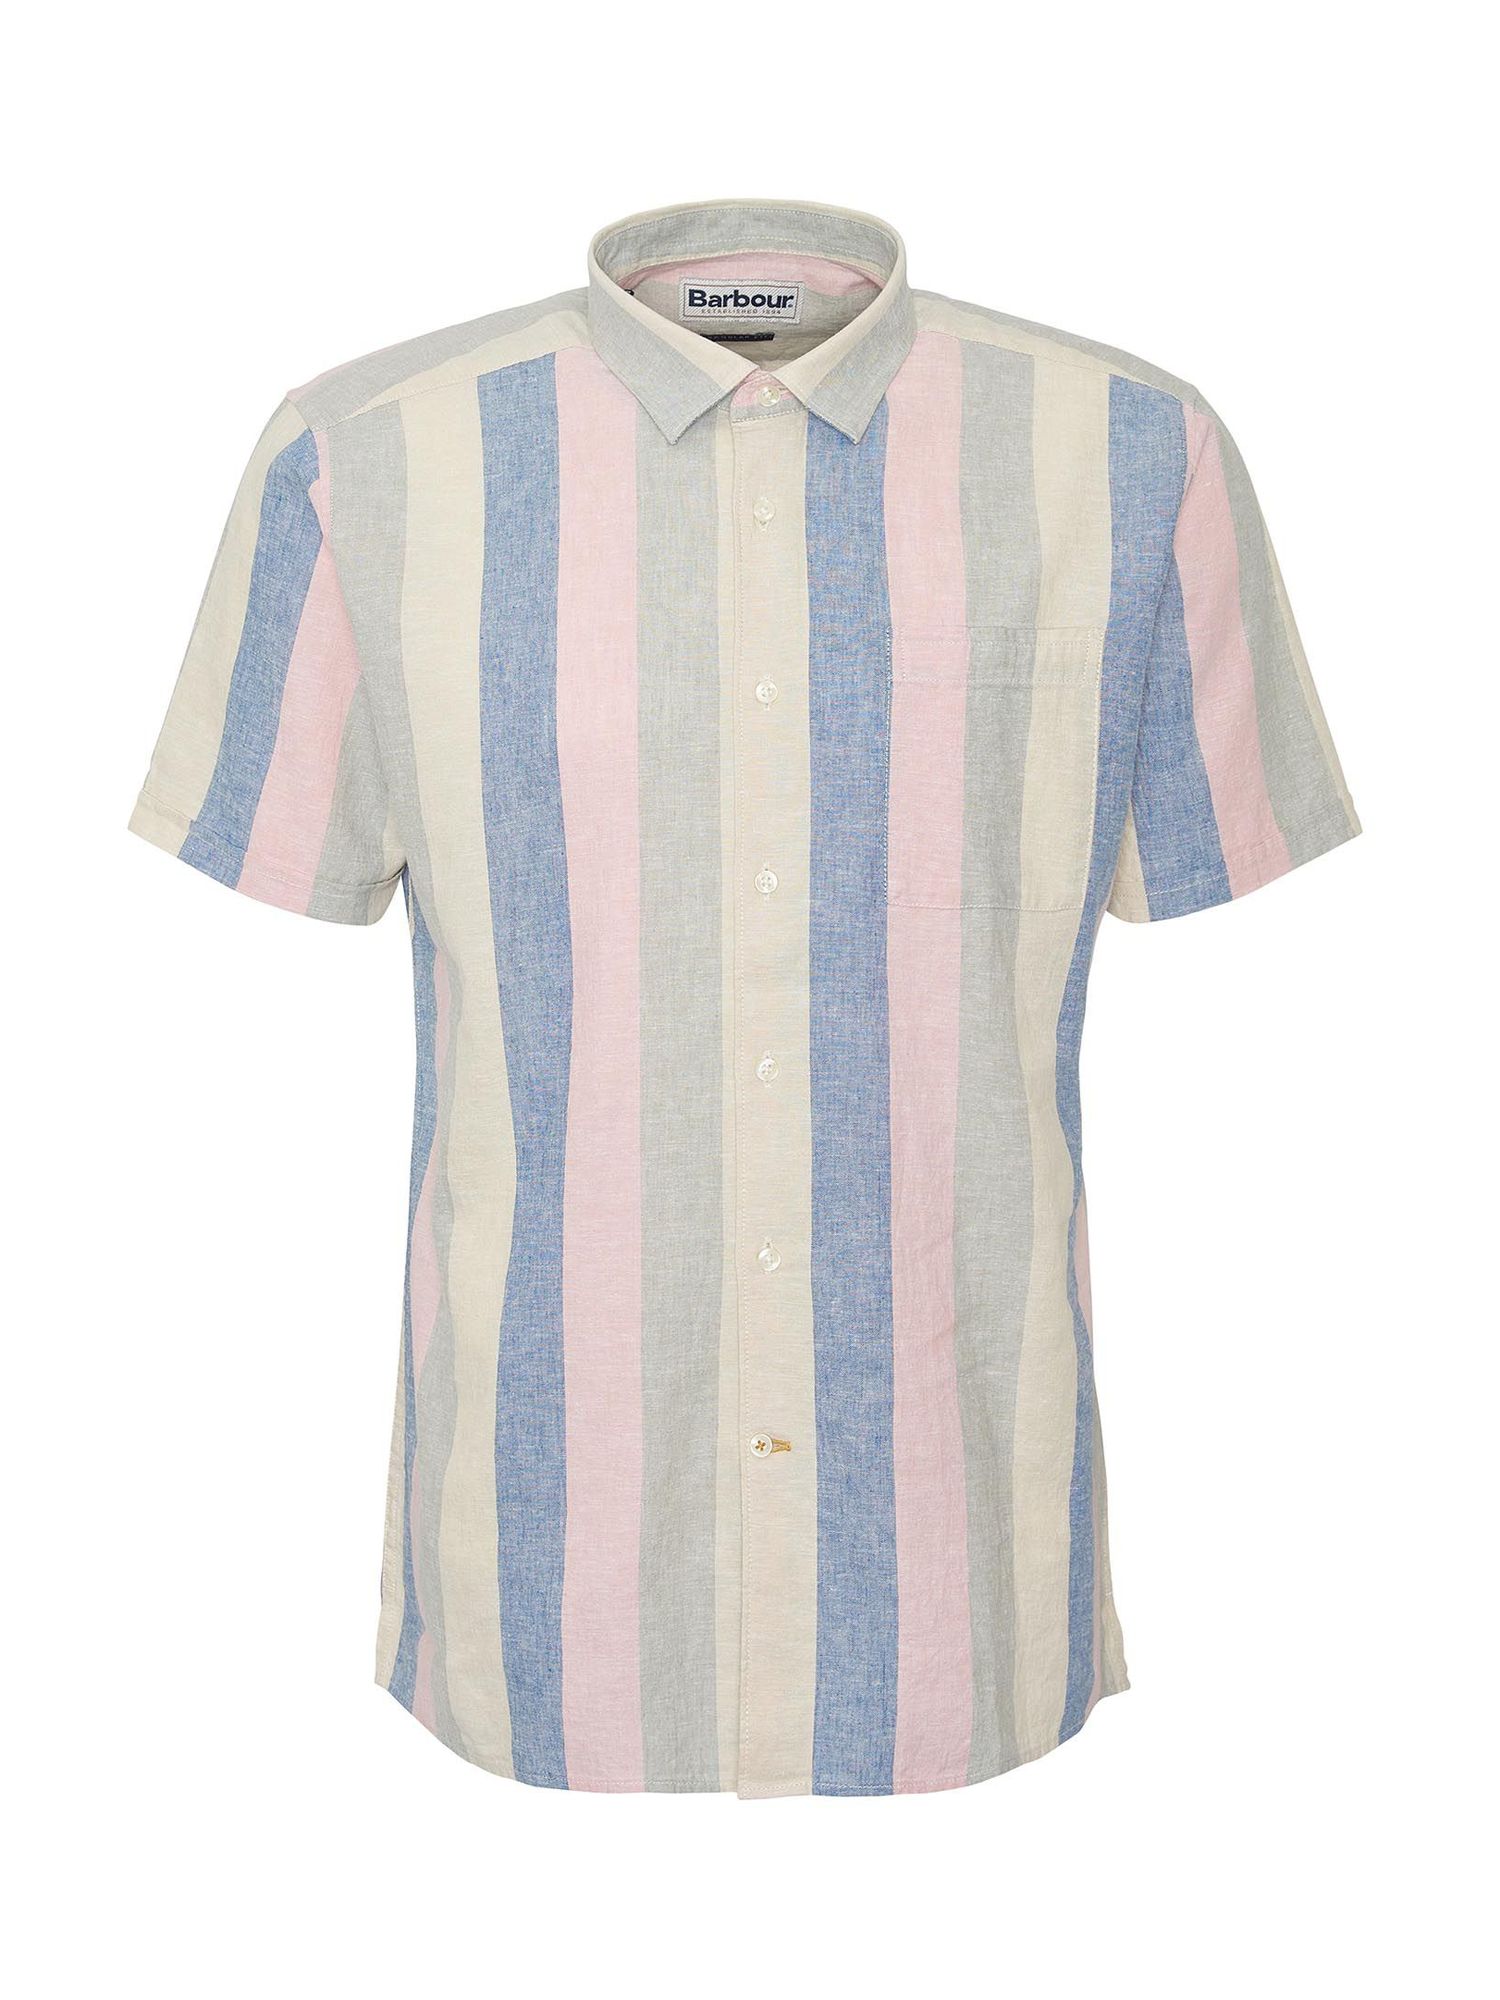 Barbour International Portwell Linen Blend Shirt, Multi, XL